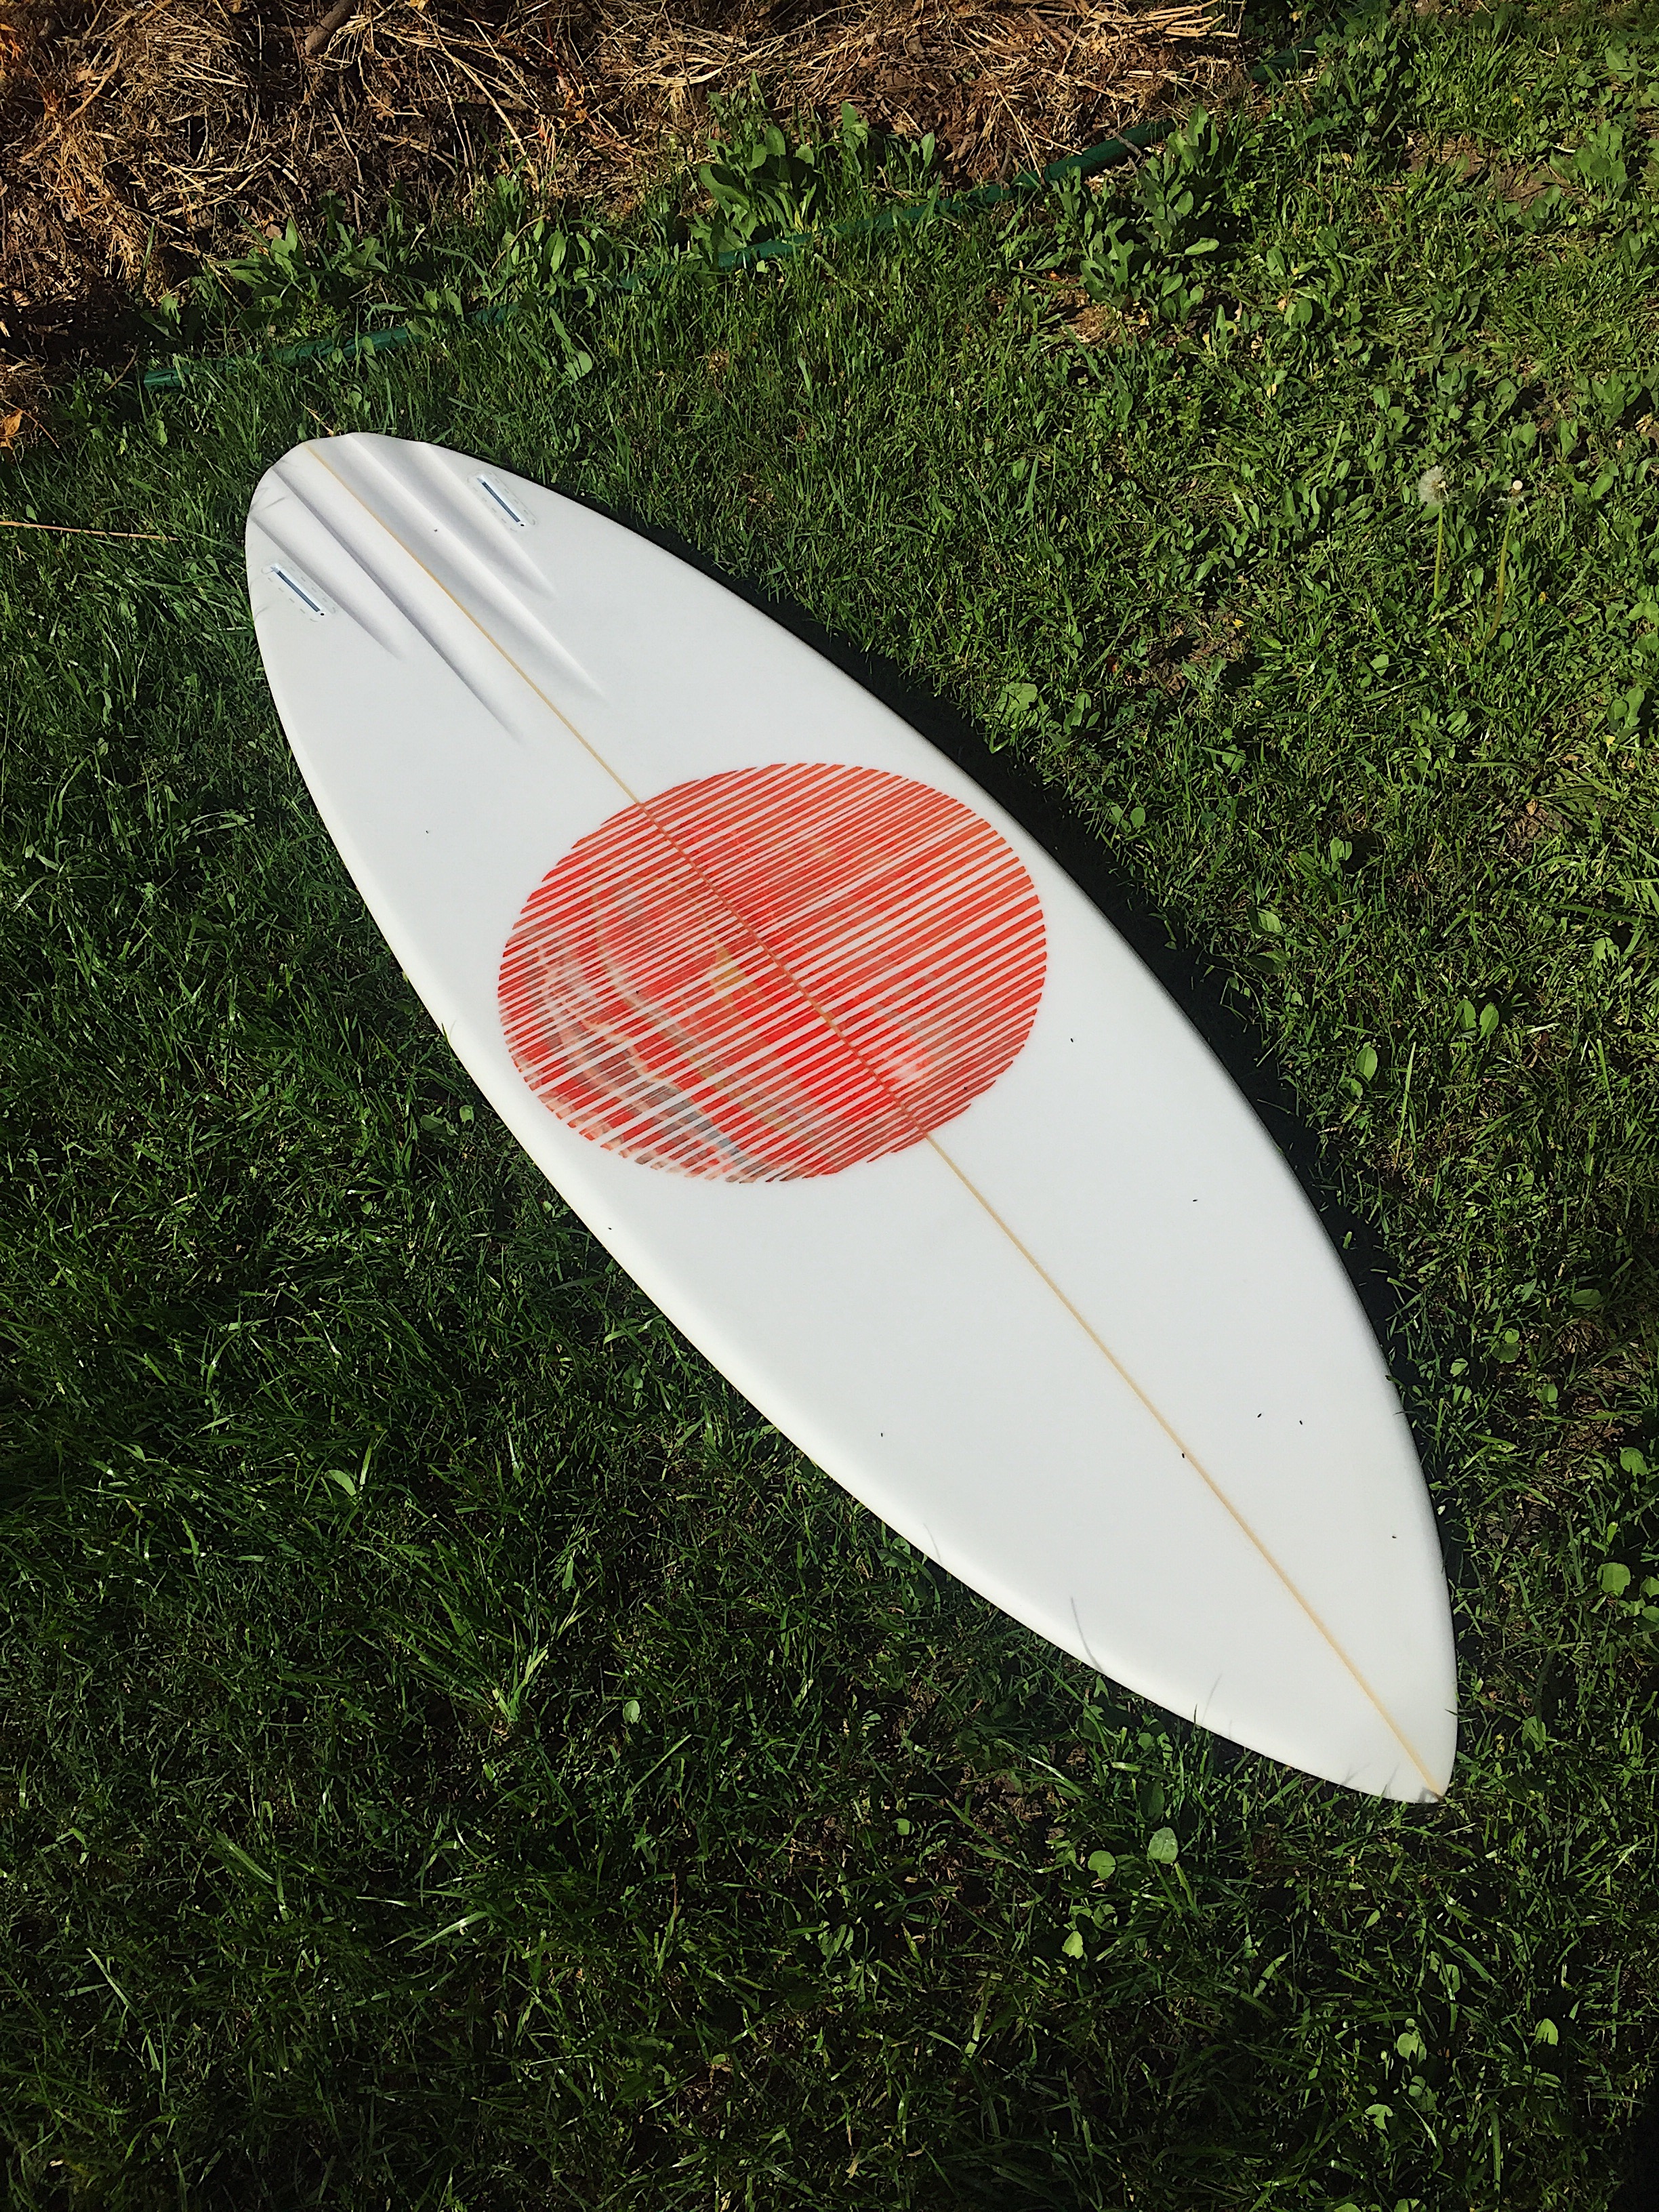 Custom channel bottom twin fin surfboard hand shaped by shaper Shea Somma of San Luis Obispo California